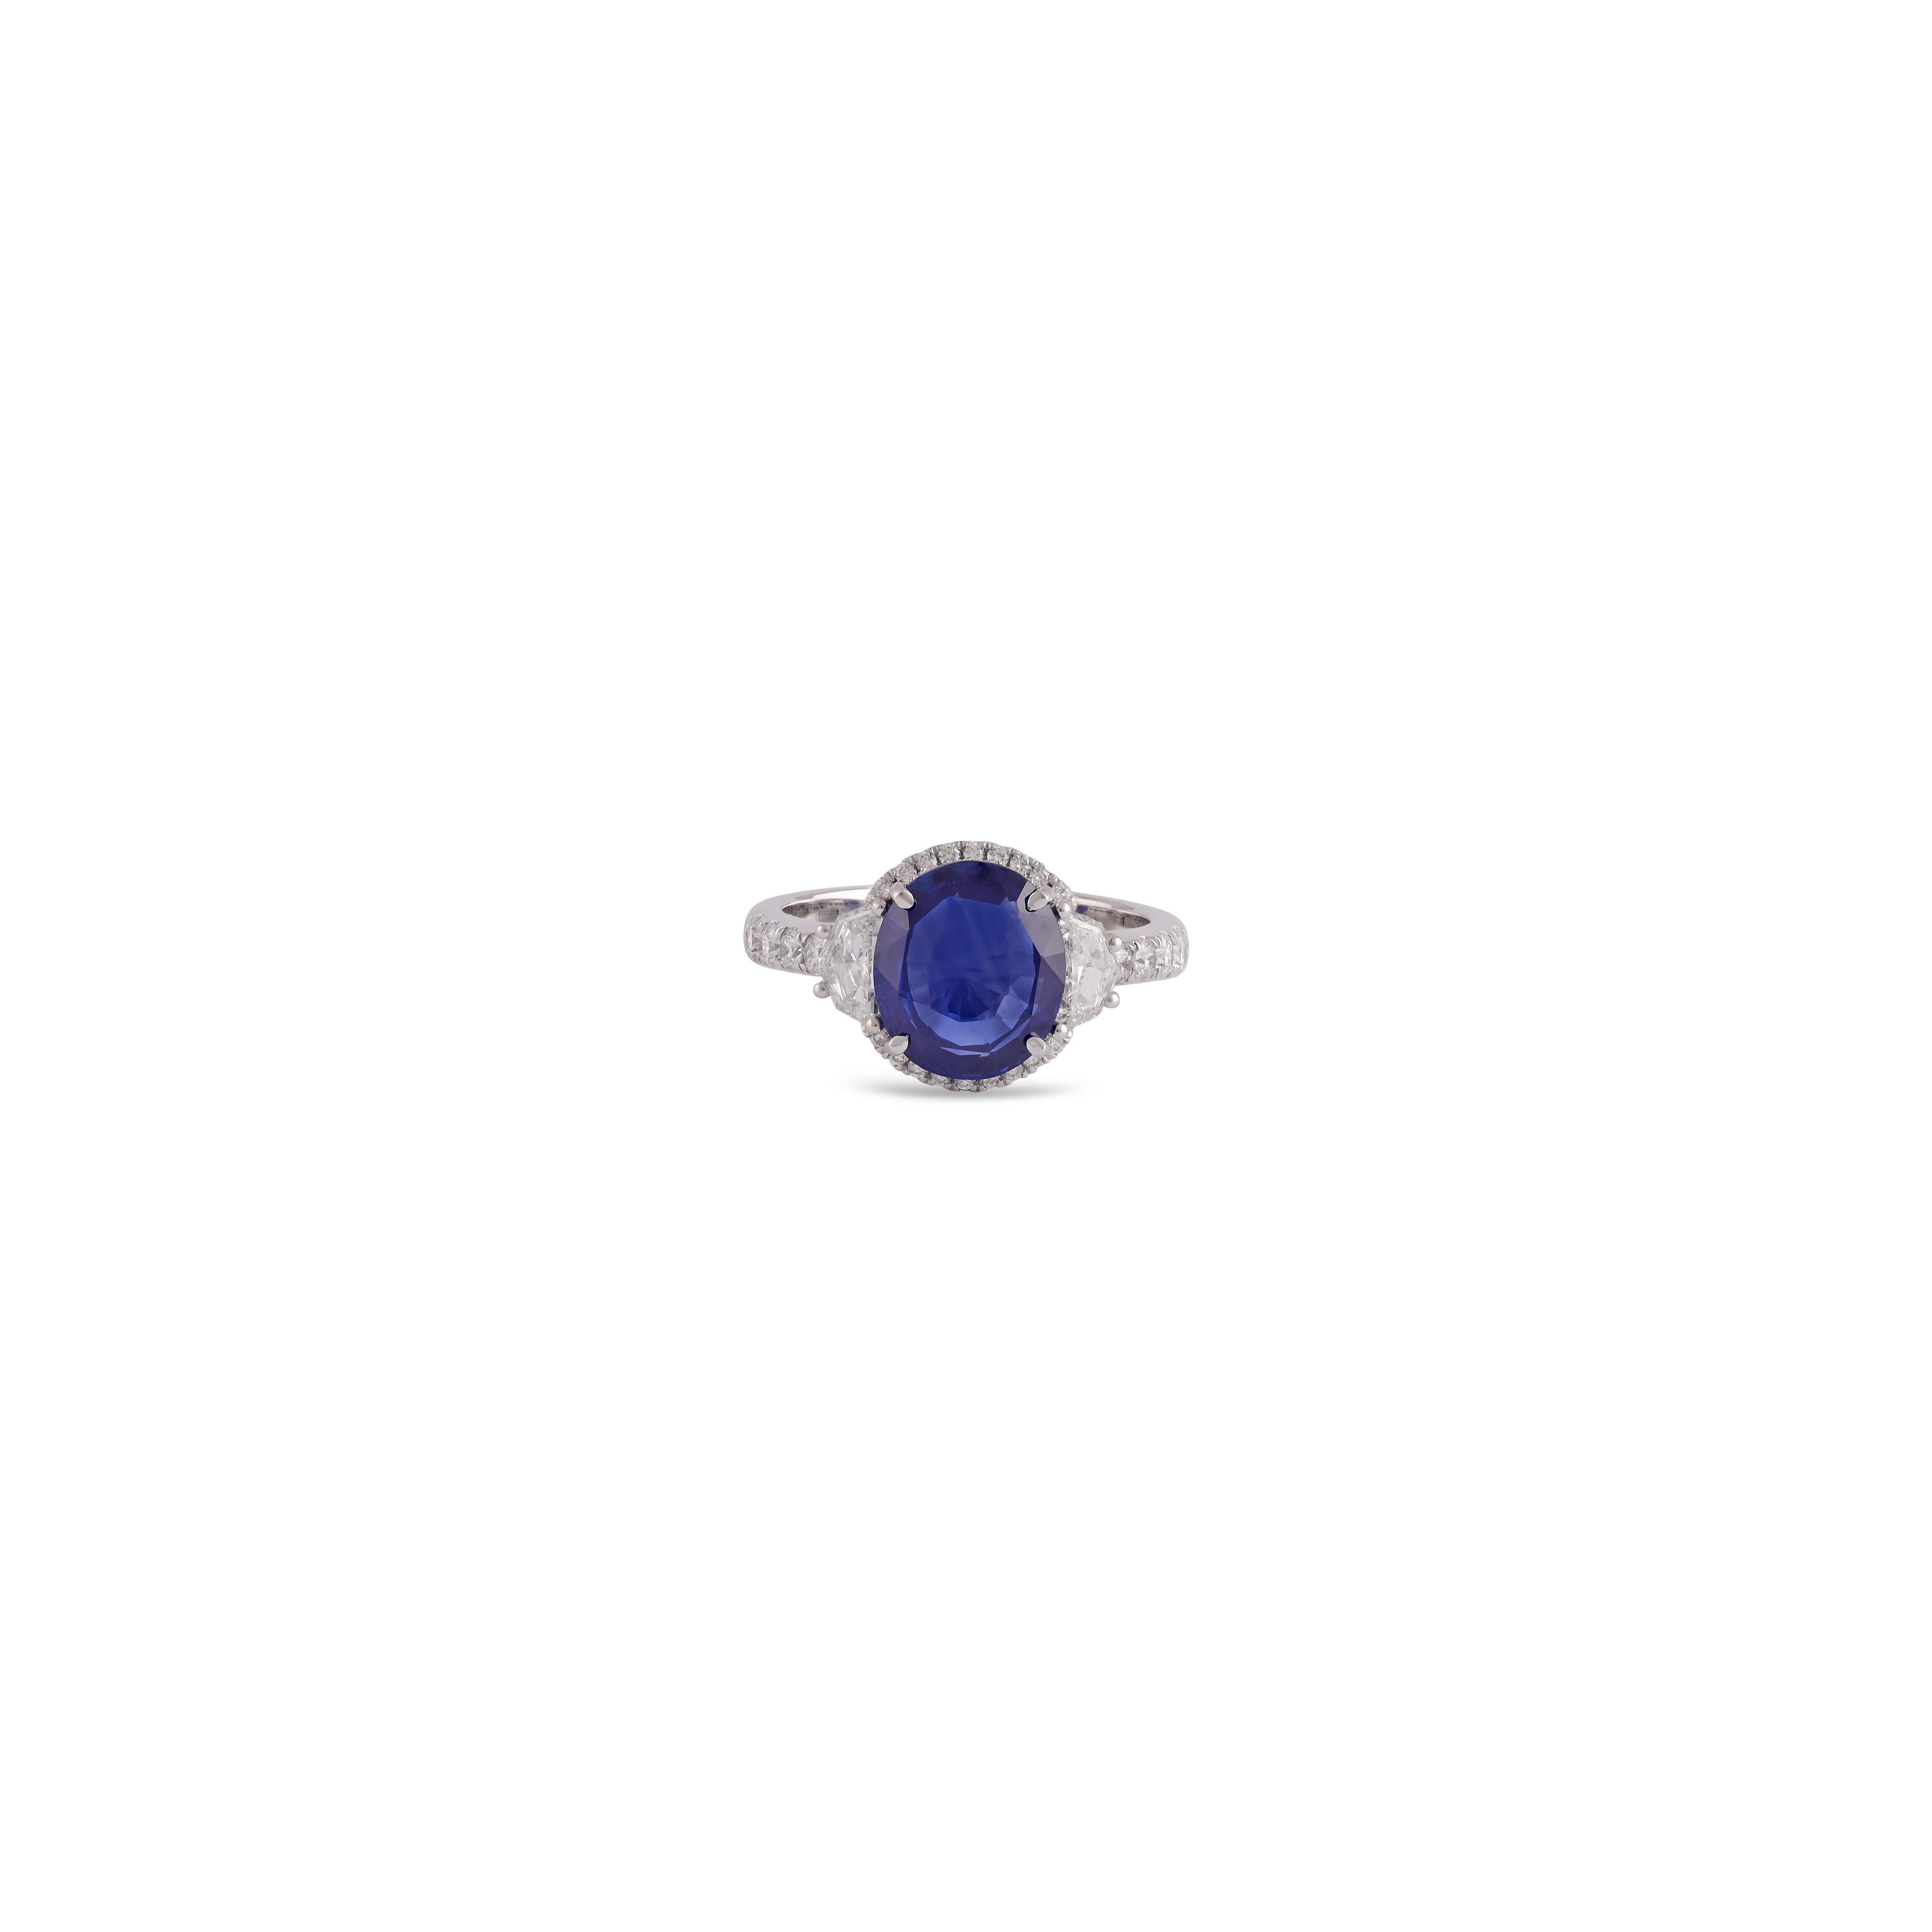 Es ist eine exklusive  High Value Clear Blue Sapphire & Diamant-Ring in 18k Weißgold mit 1 Stück Saphir Gewicht 3,54 Karat mit 40 Stück Diamanten Gewicht 0,96 Karat diese gesamte Ring ist in 18k Weißgold besetzt, Ringgröße kann als pro die